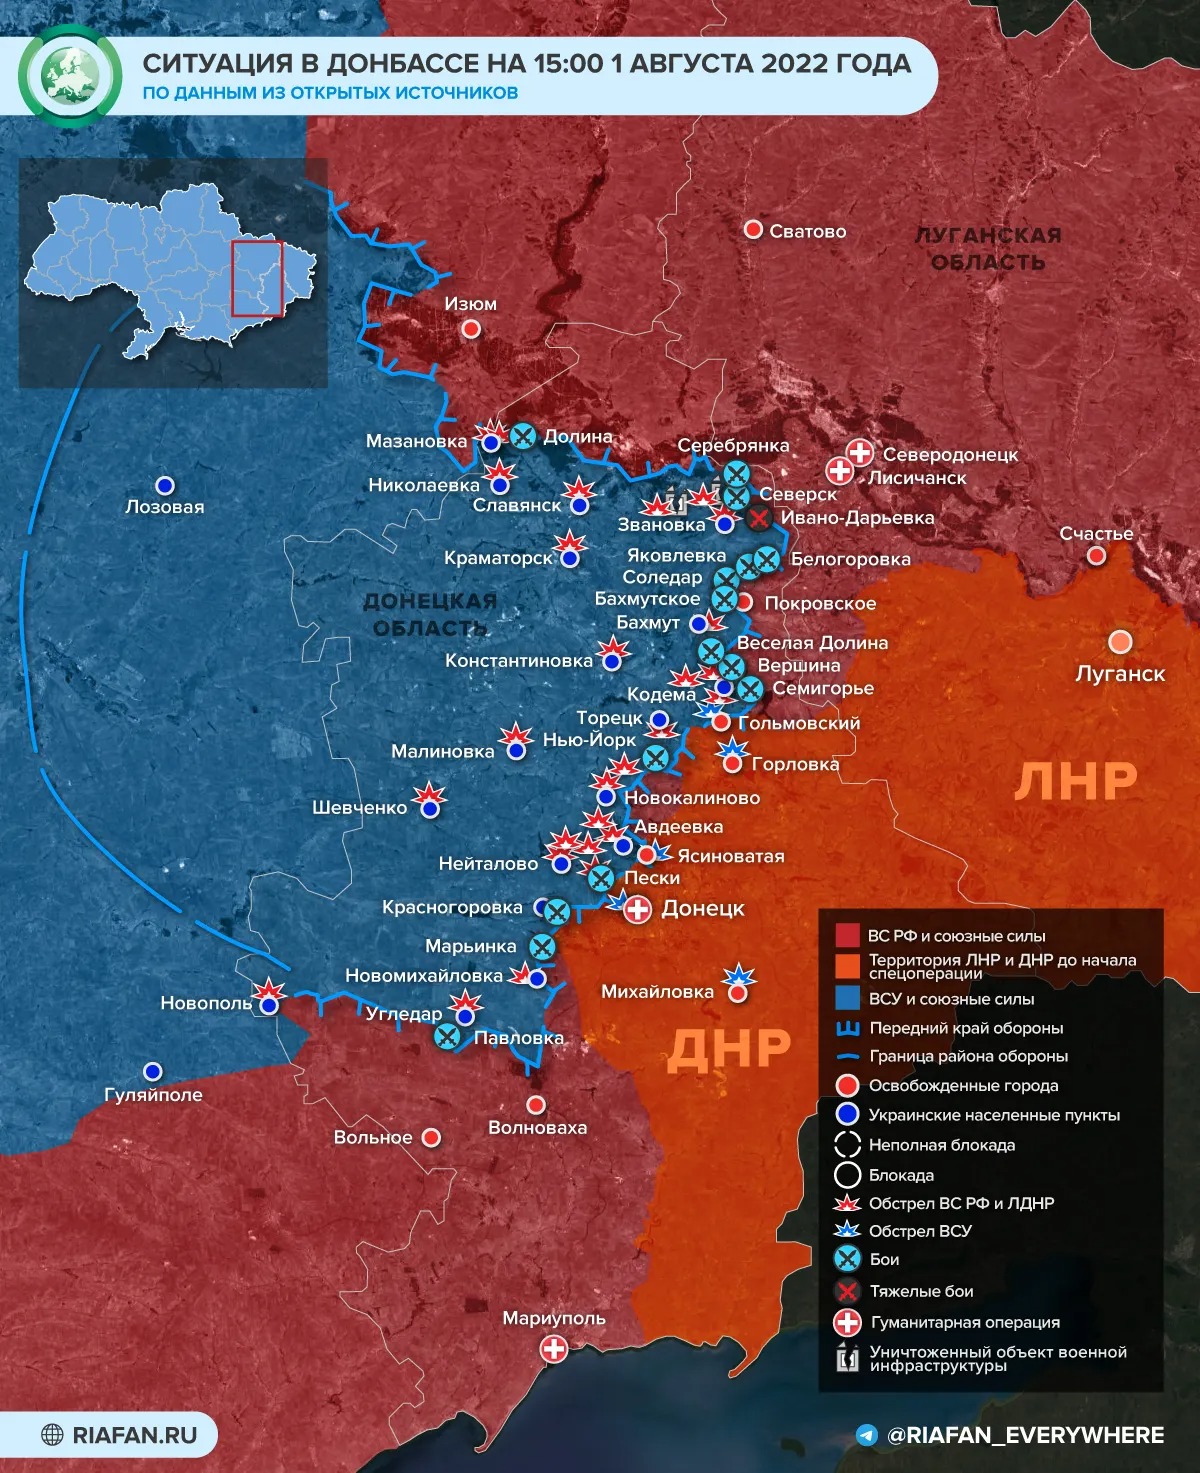 Дезертирство в ВСУ, раскол в СБУ: последние новости военной спецоперации на Украине сегодня 2 августа